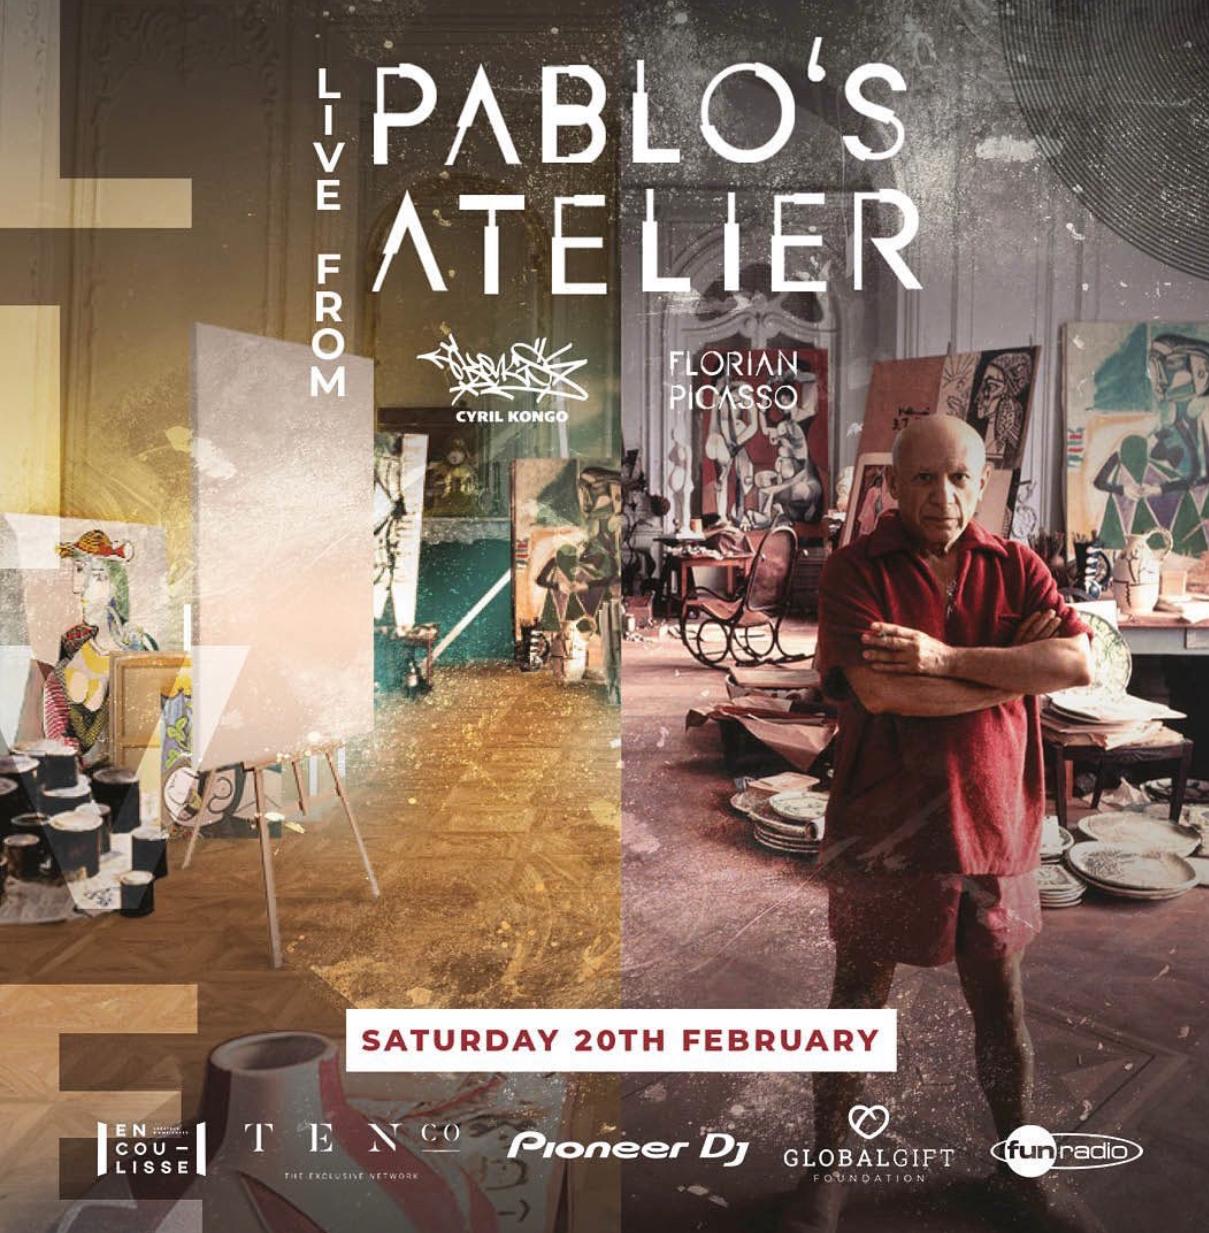 Hành trình tìm về cội nguồn của hai nghệ sĩ gốc Việt tại xưởng vẽ của Pablo Picasso